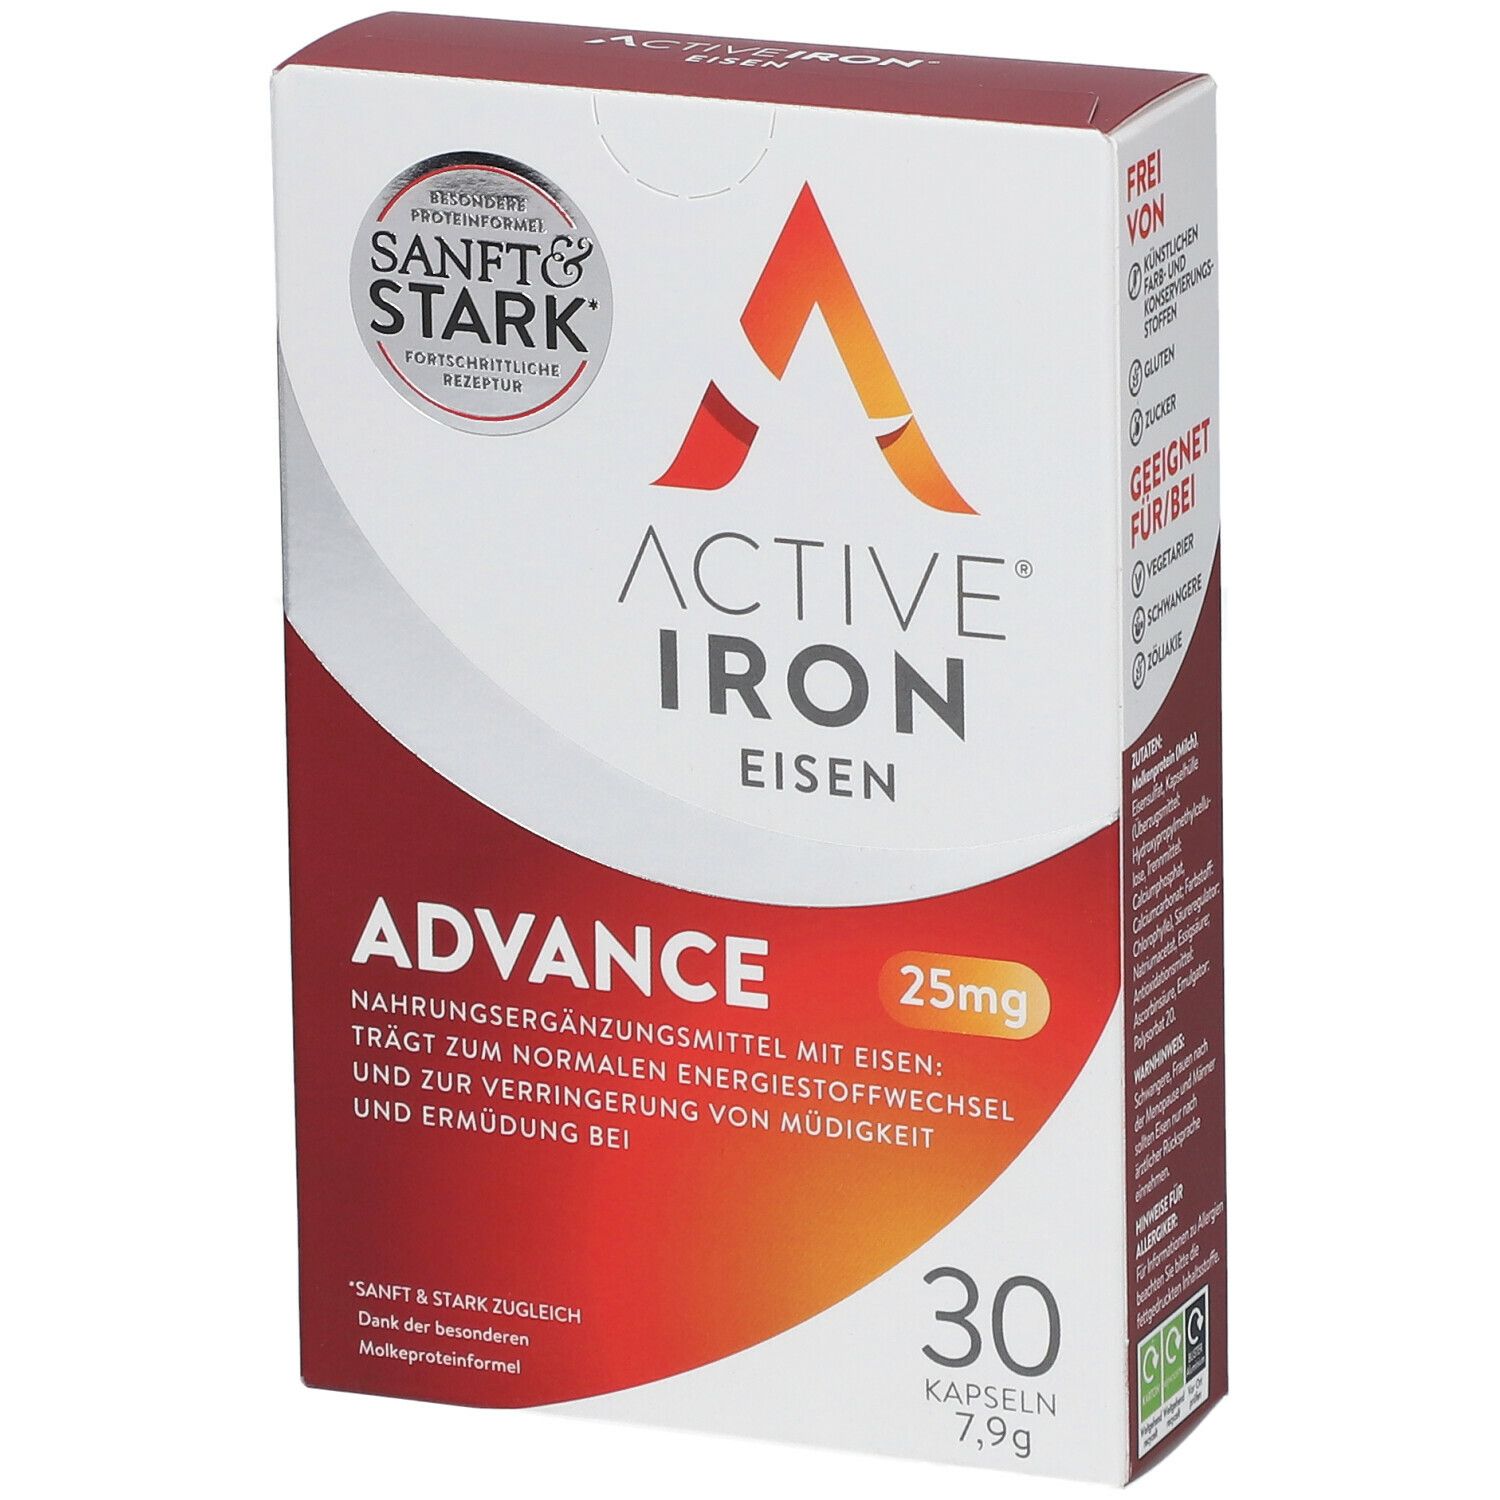 Active® Iron Eisen Advance